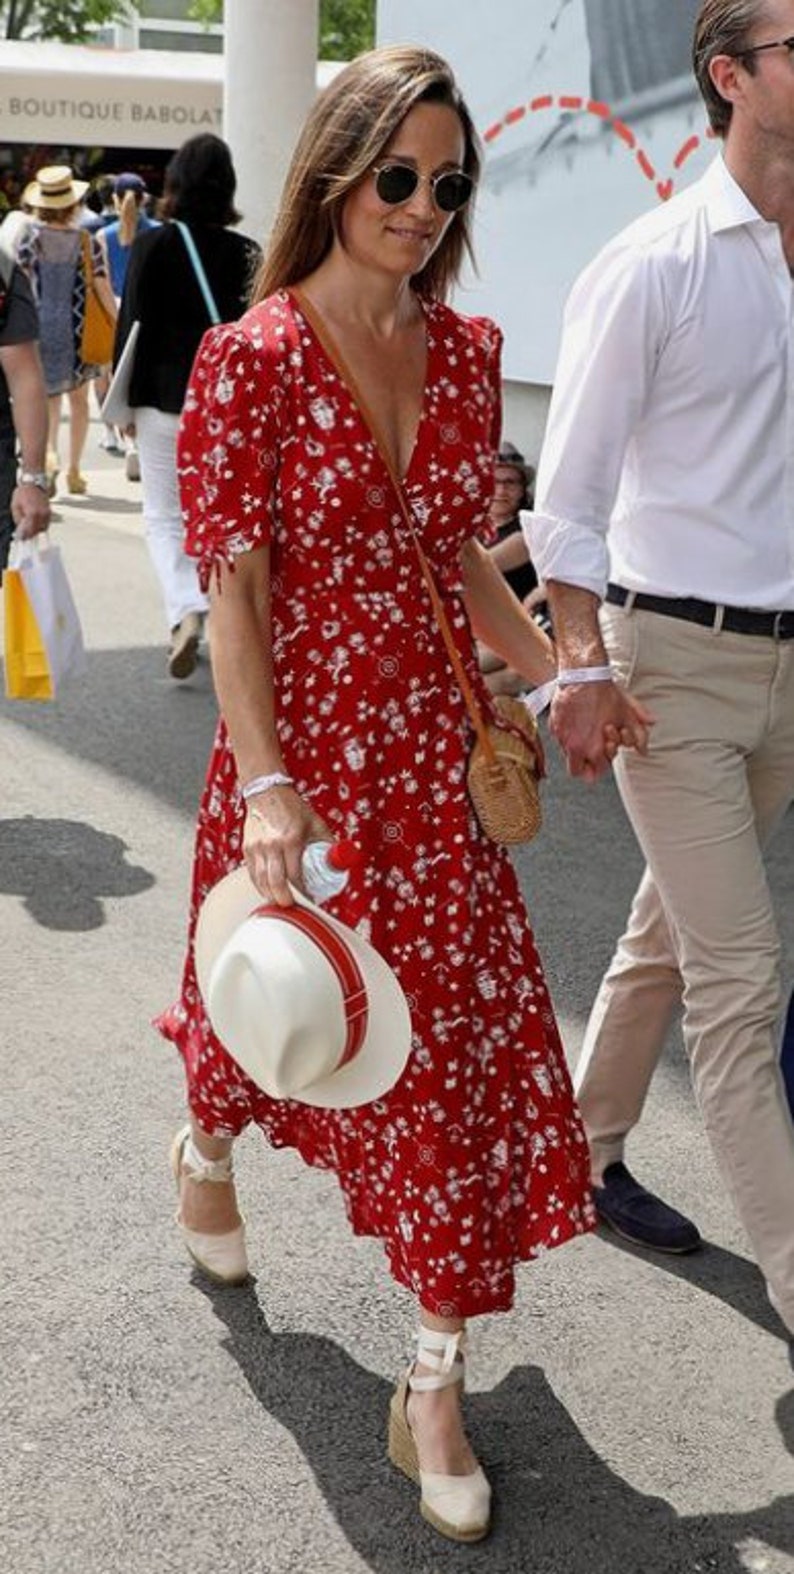 Espadrille Wedges Kate Middleton Style Duchess of Cambridge | Etsy